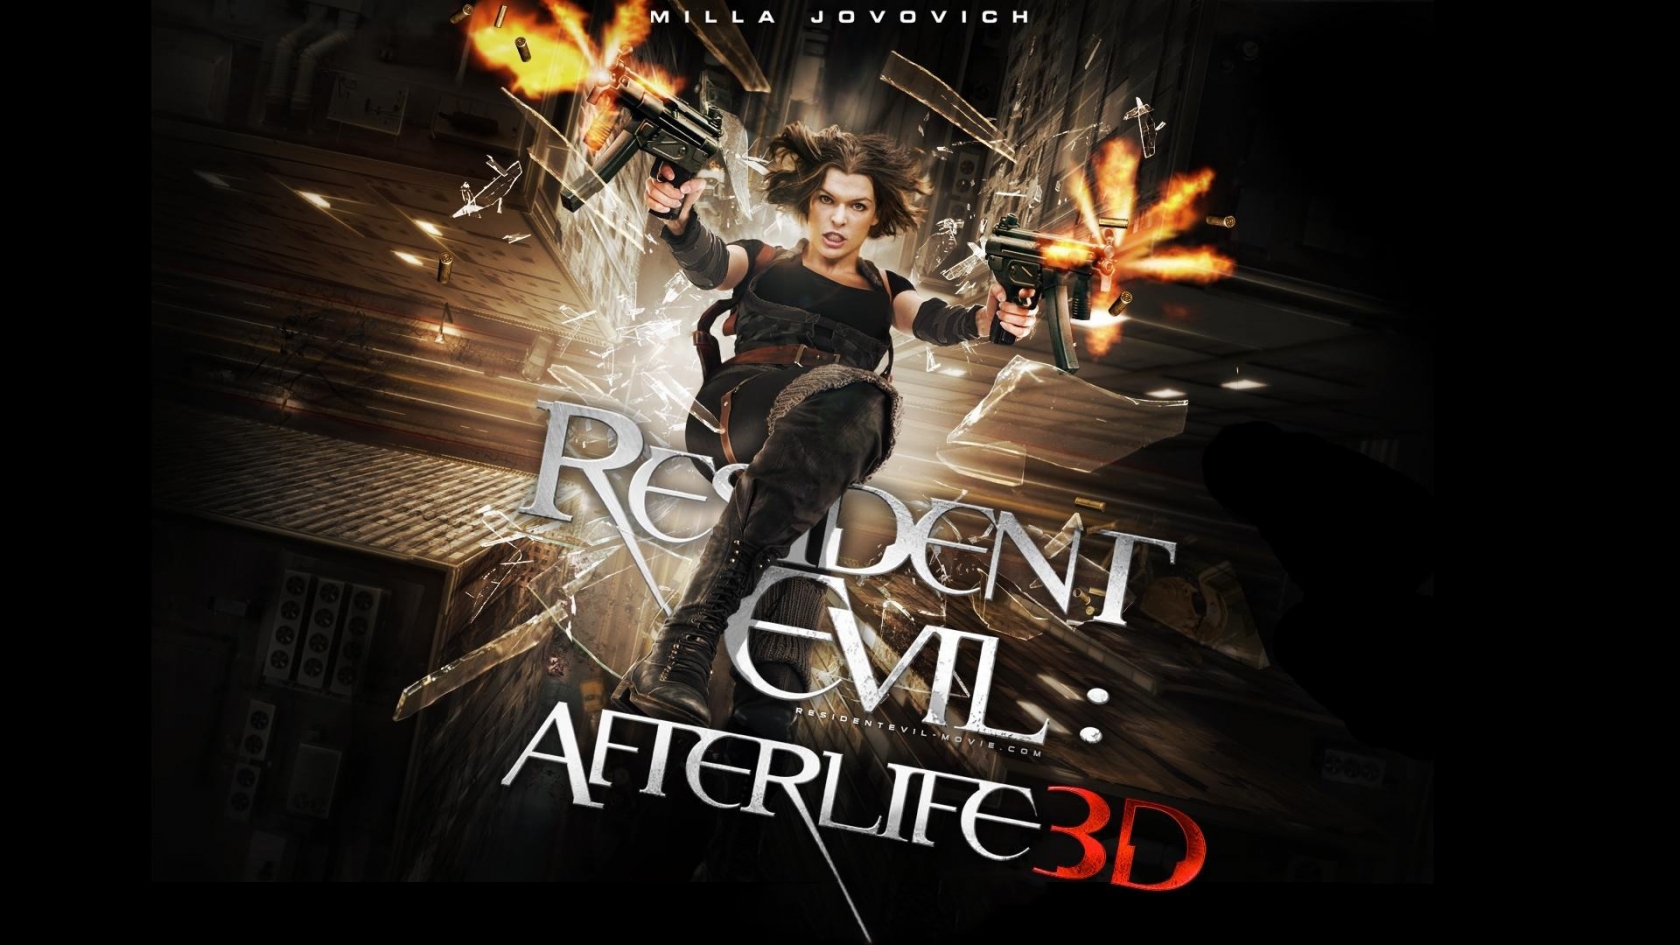 Resident Evil Afterlife 3D Poster for 1680 x 945 HDTV resolution